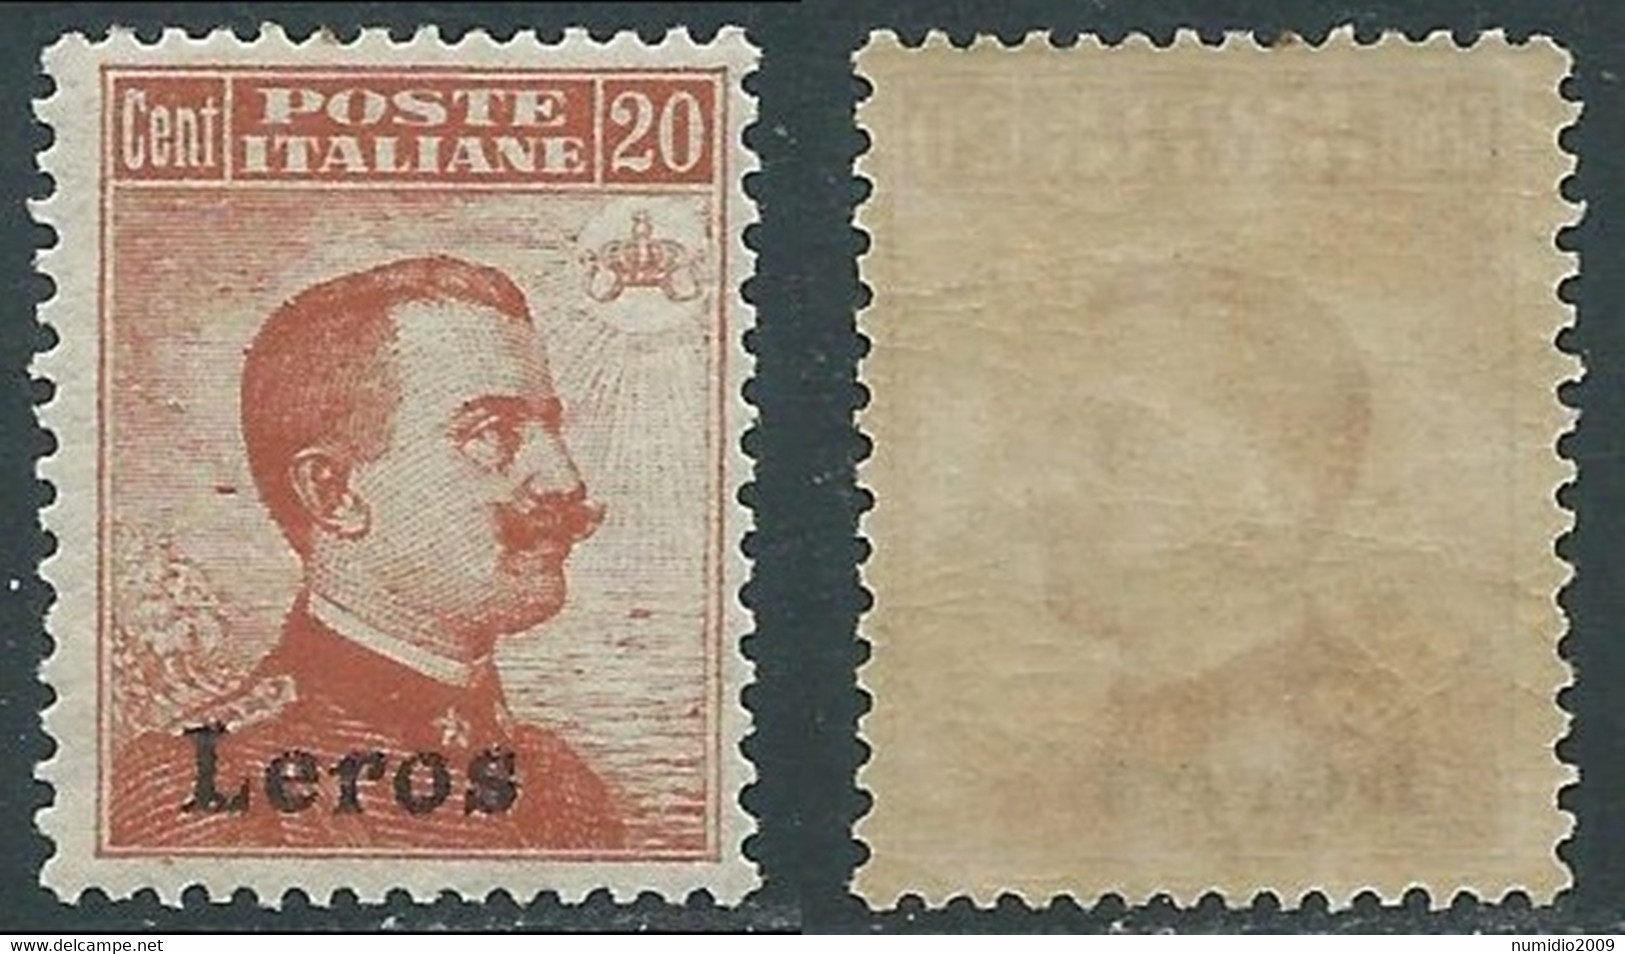 1917 EGEO LERO EFFIGIE 20 CENT MNH ** - E203 - Ägäis (Lero)